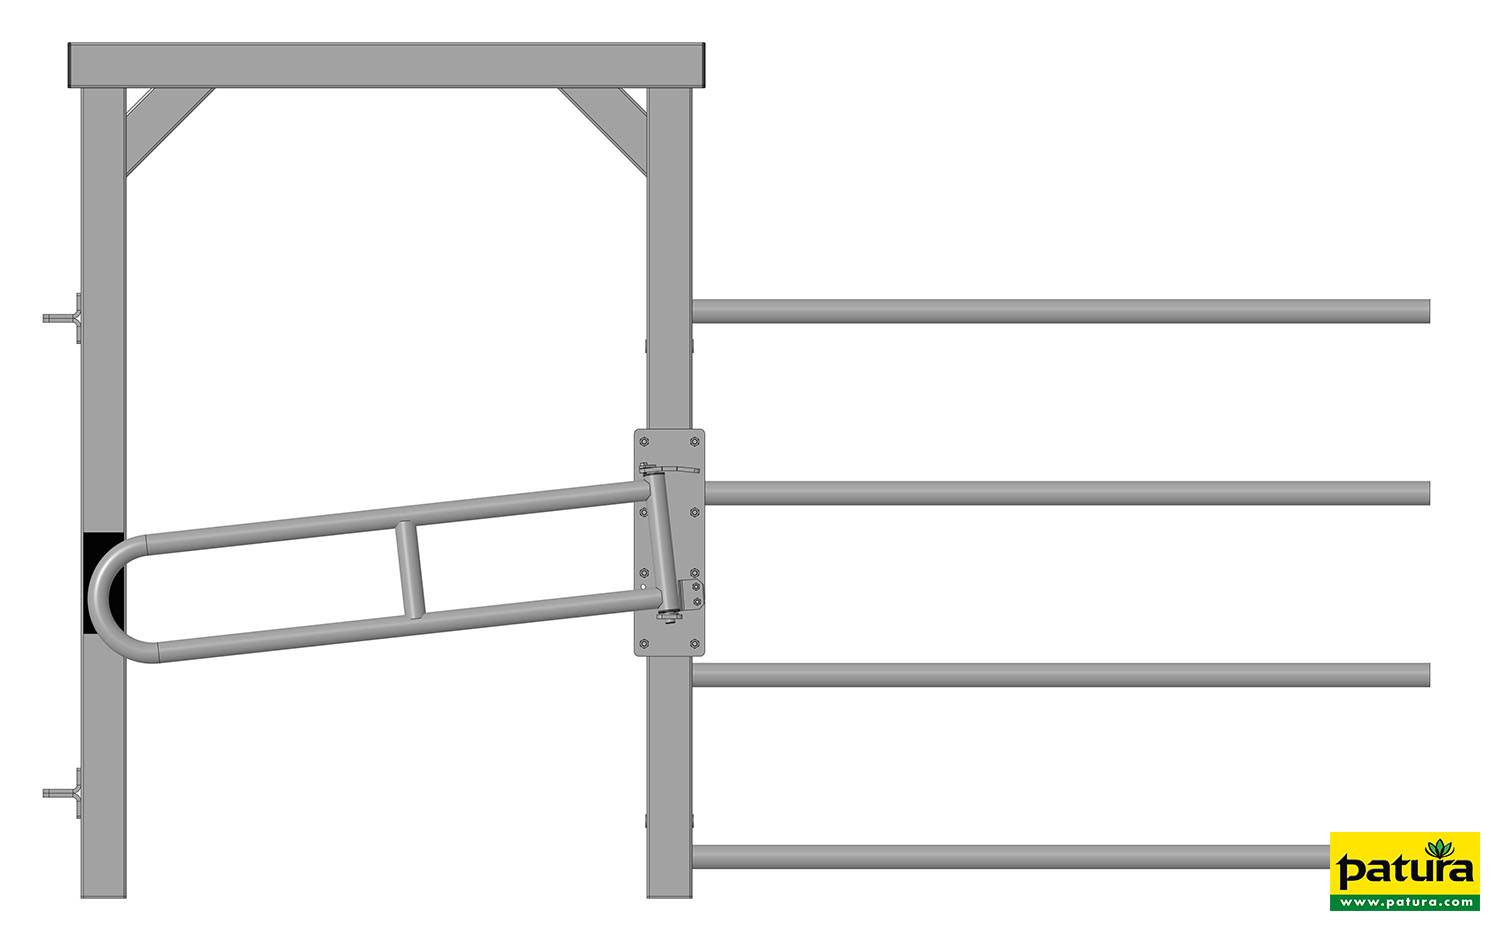 Einschubteil R4 mit Rahmen und Ein-Wege-Tor